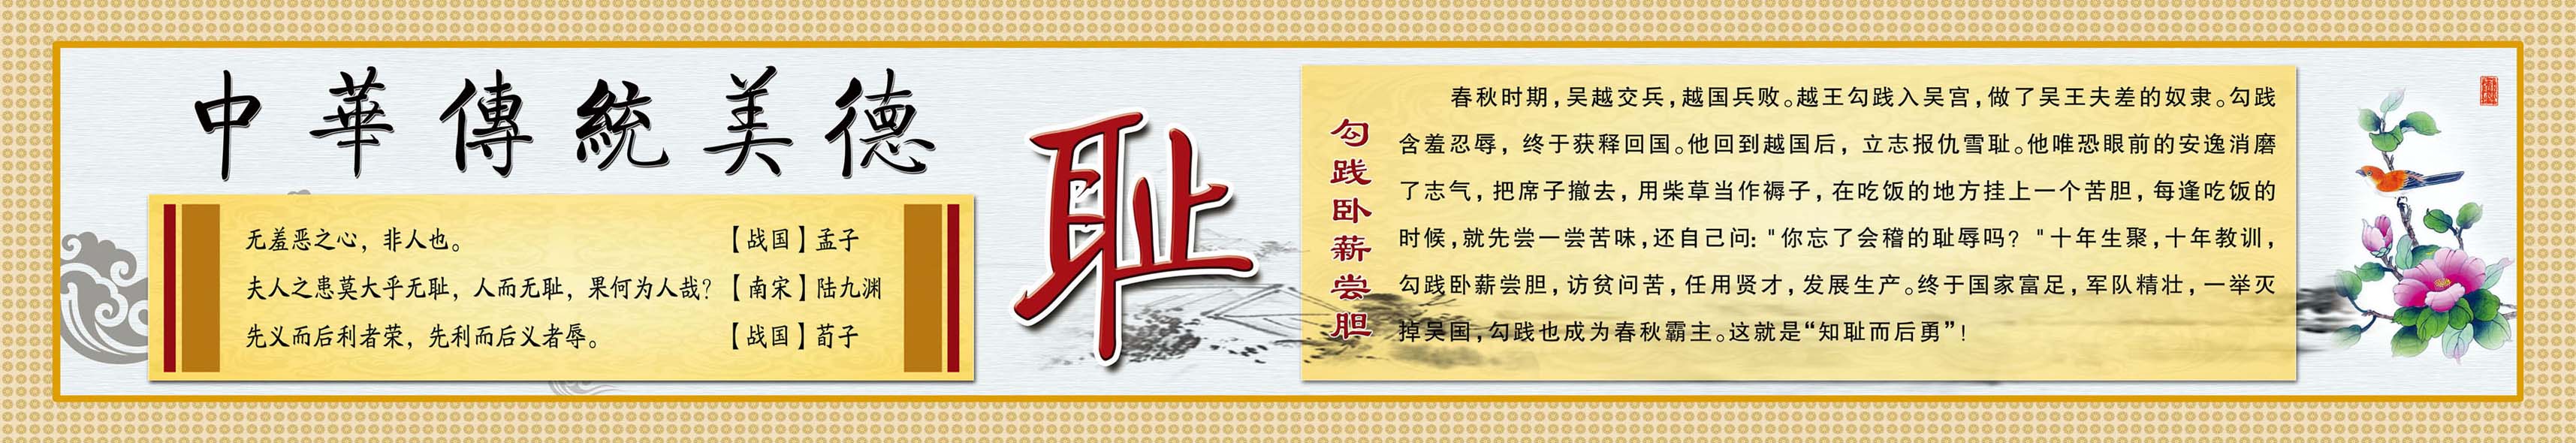 638画布海报展板喷绘素材贴纸13中华传统美德人生八德耻